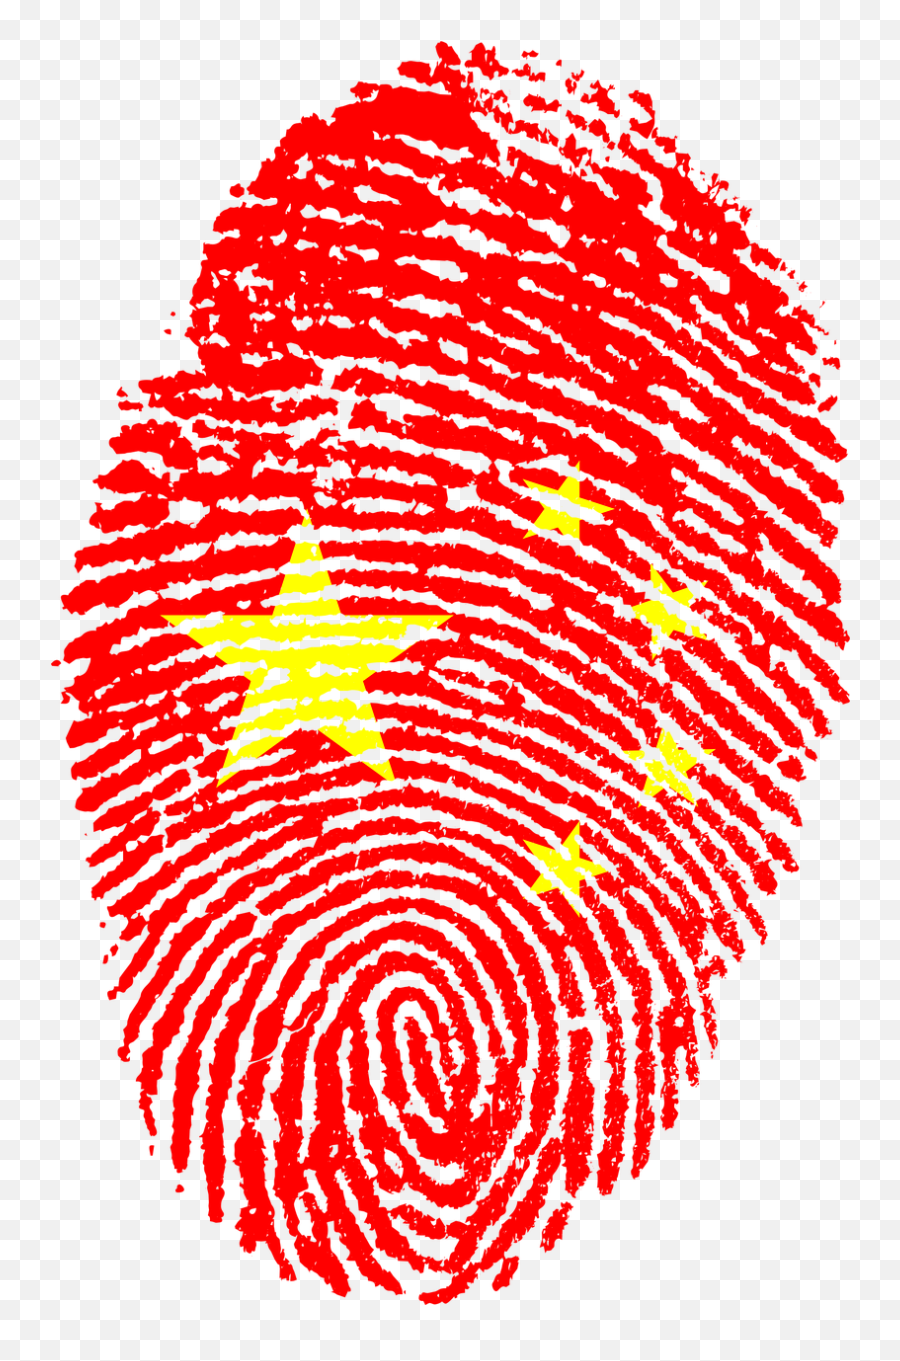 China Flag Fingerprint Country Pride - China Flag Fingerprint Emoji,Pride Flag Emojis